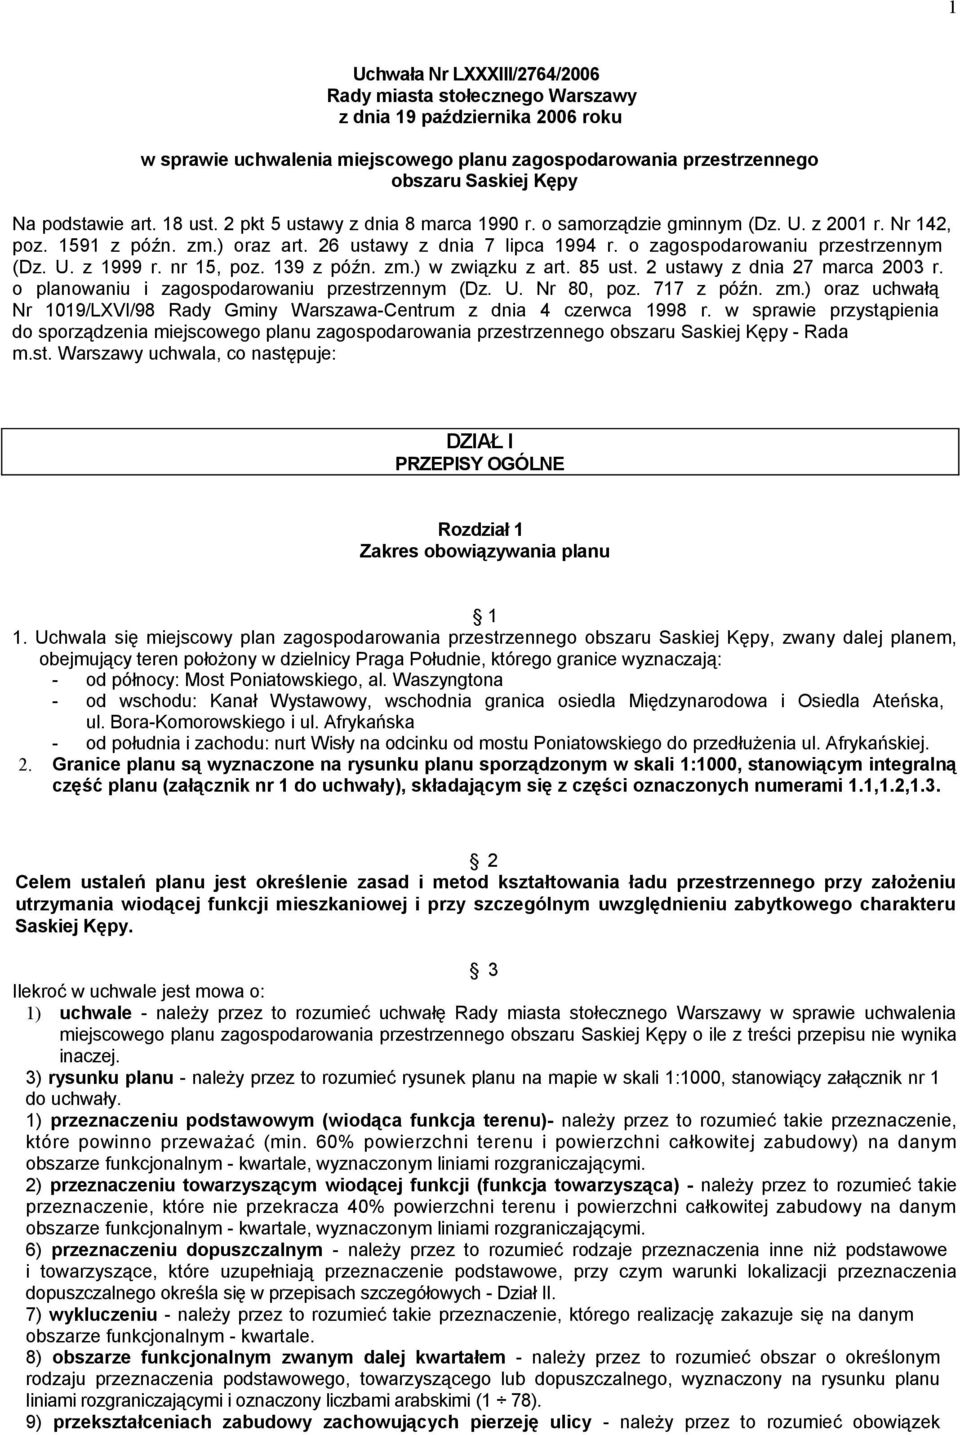 nr 15, poz. 139 z późn. zm.) w związku z art. 85 ust. 2 ustawy z dnia 27 marca 2003 r. o planowaniu i zagospodarowaniu przestrzennym (Dz. U. Nr 80, poz. 717 z późn. zm.) oraz uchwałą Nr 1019/LXVI/98 Rady Gminy Warszawa-Centrum z dnia 4 czerwca 1998 r.